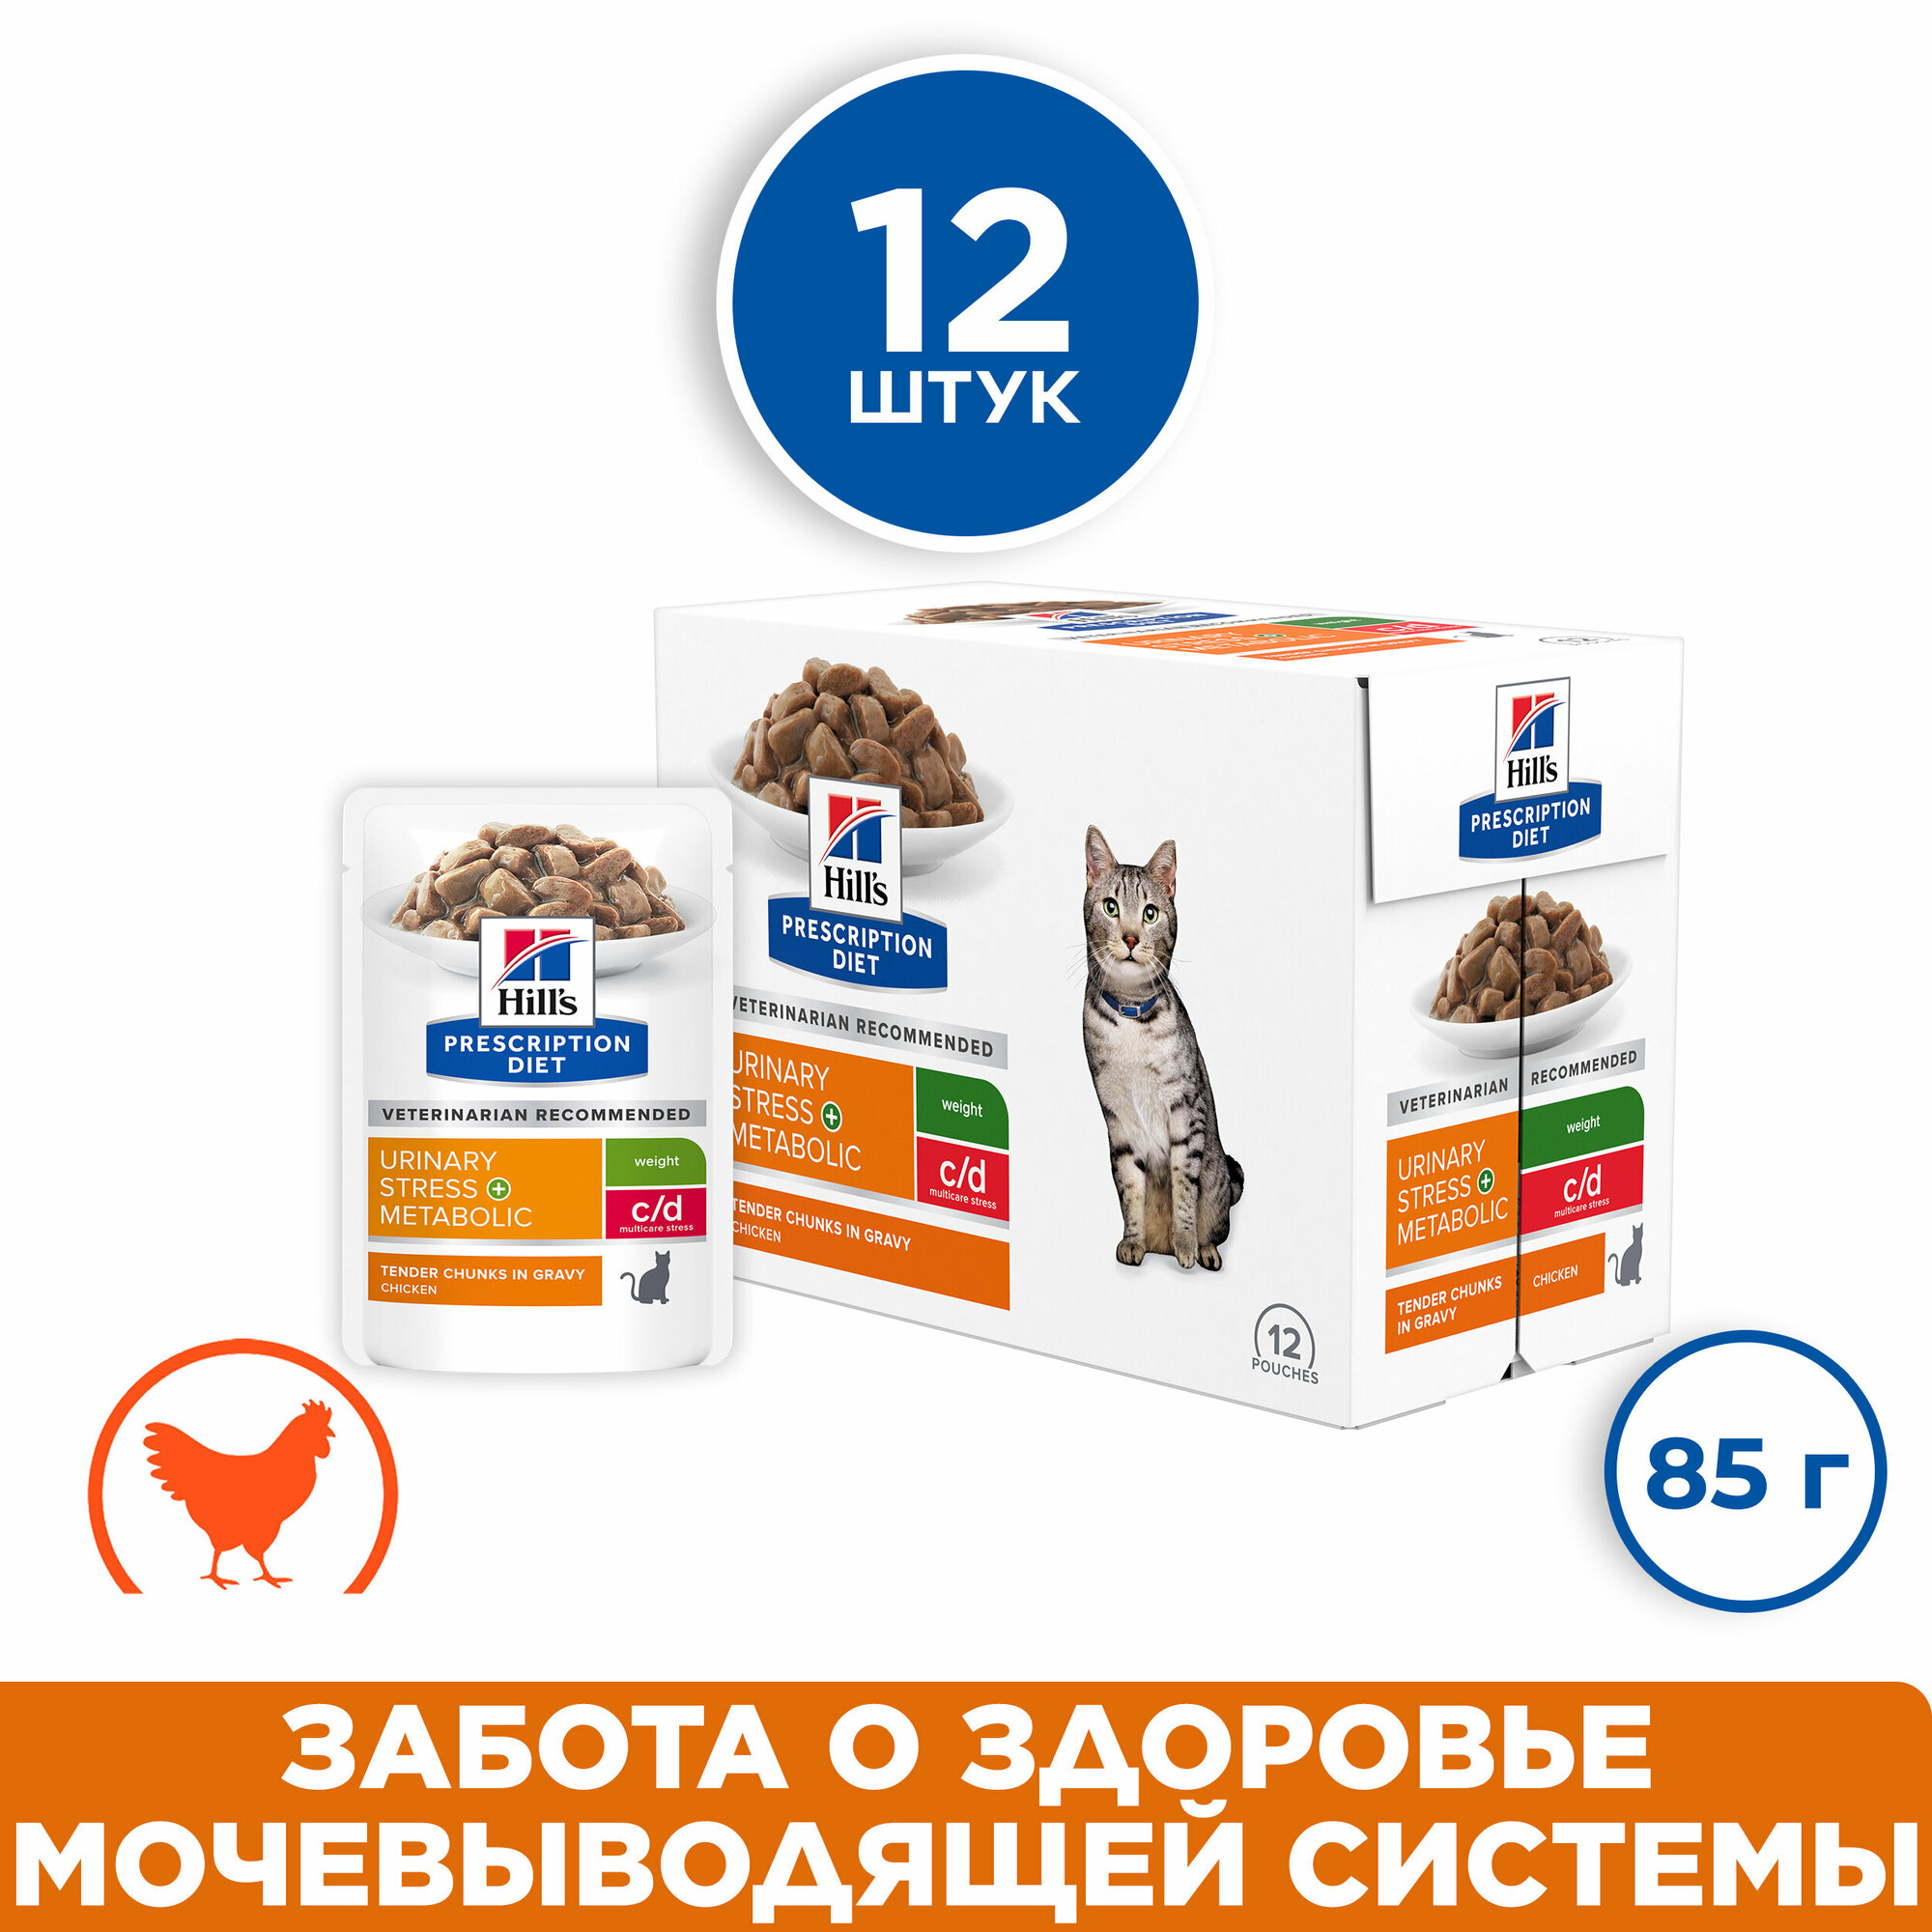 Влажный диетический корм для кошек Hill's Prescription Diet c/d Multicare Stress+Metabolic цистит при стрессе для снижения веса курица 12шт*85г